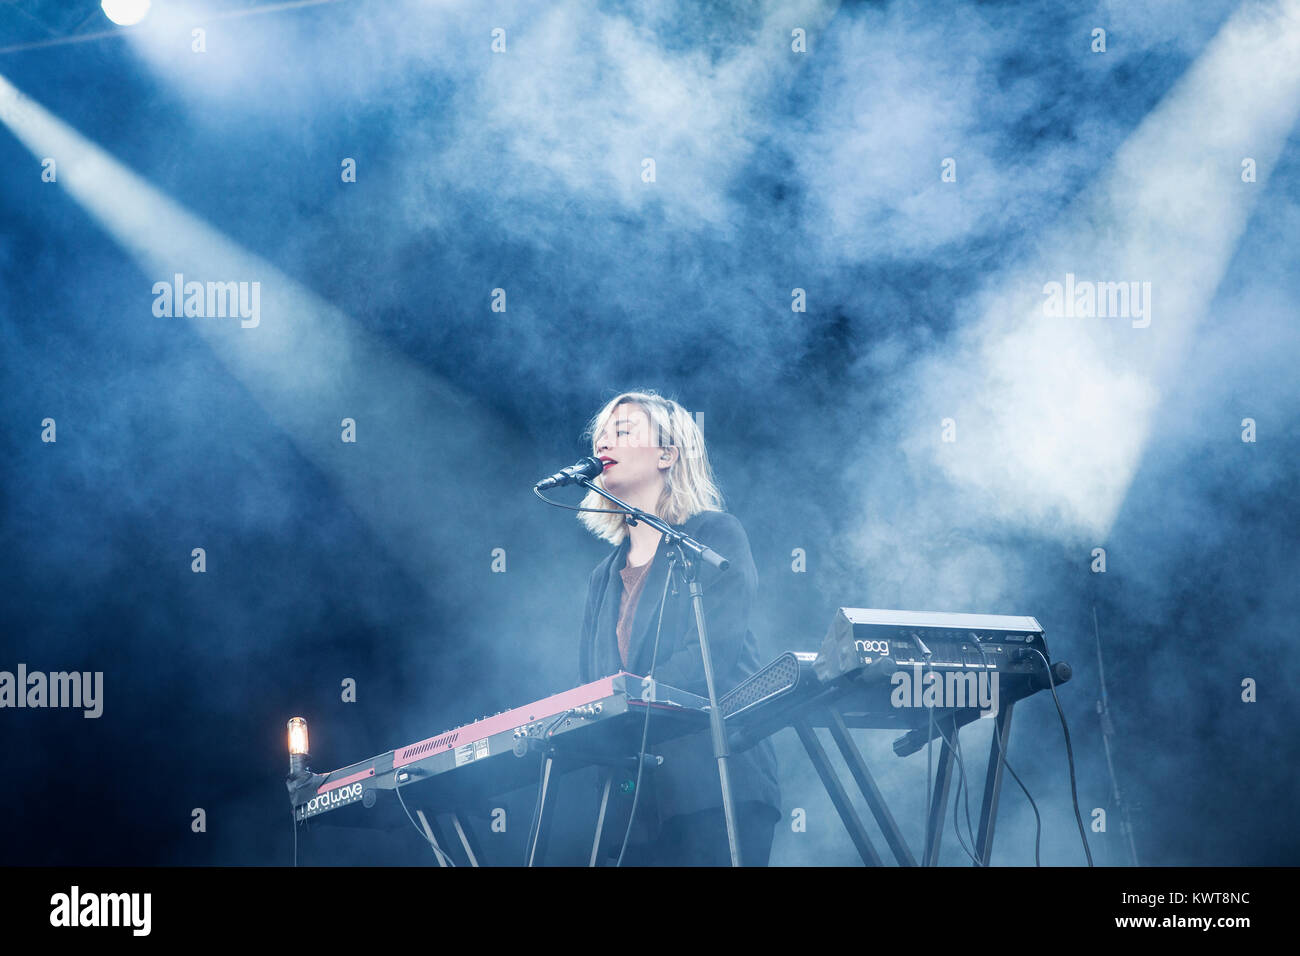 Le groupe indie pop norvégienne Highasakite effectue un concert live au Festival 2014 de la progéniture dans Tivoli de Copenhague. Ici, le musicien du groupe et joueur de clavier Marte Eberson est représenté sur scène. Danemark 25/04 2014. Banque D'Images